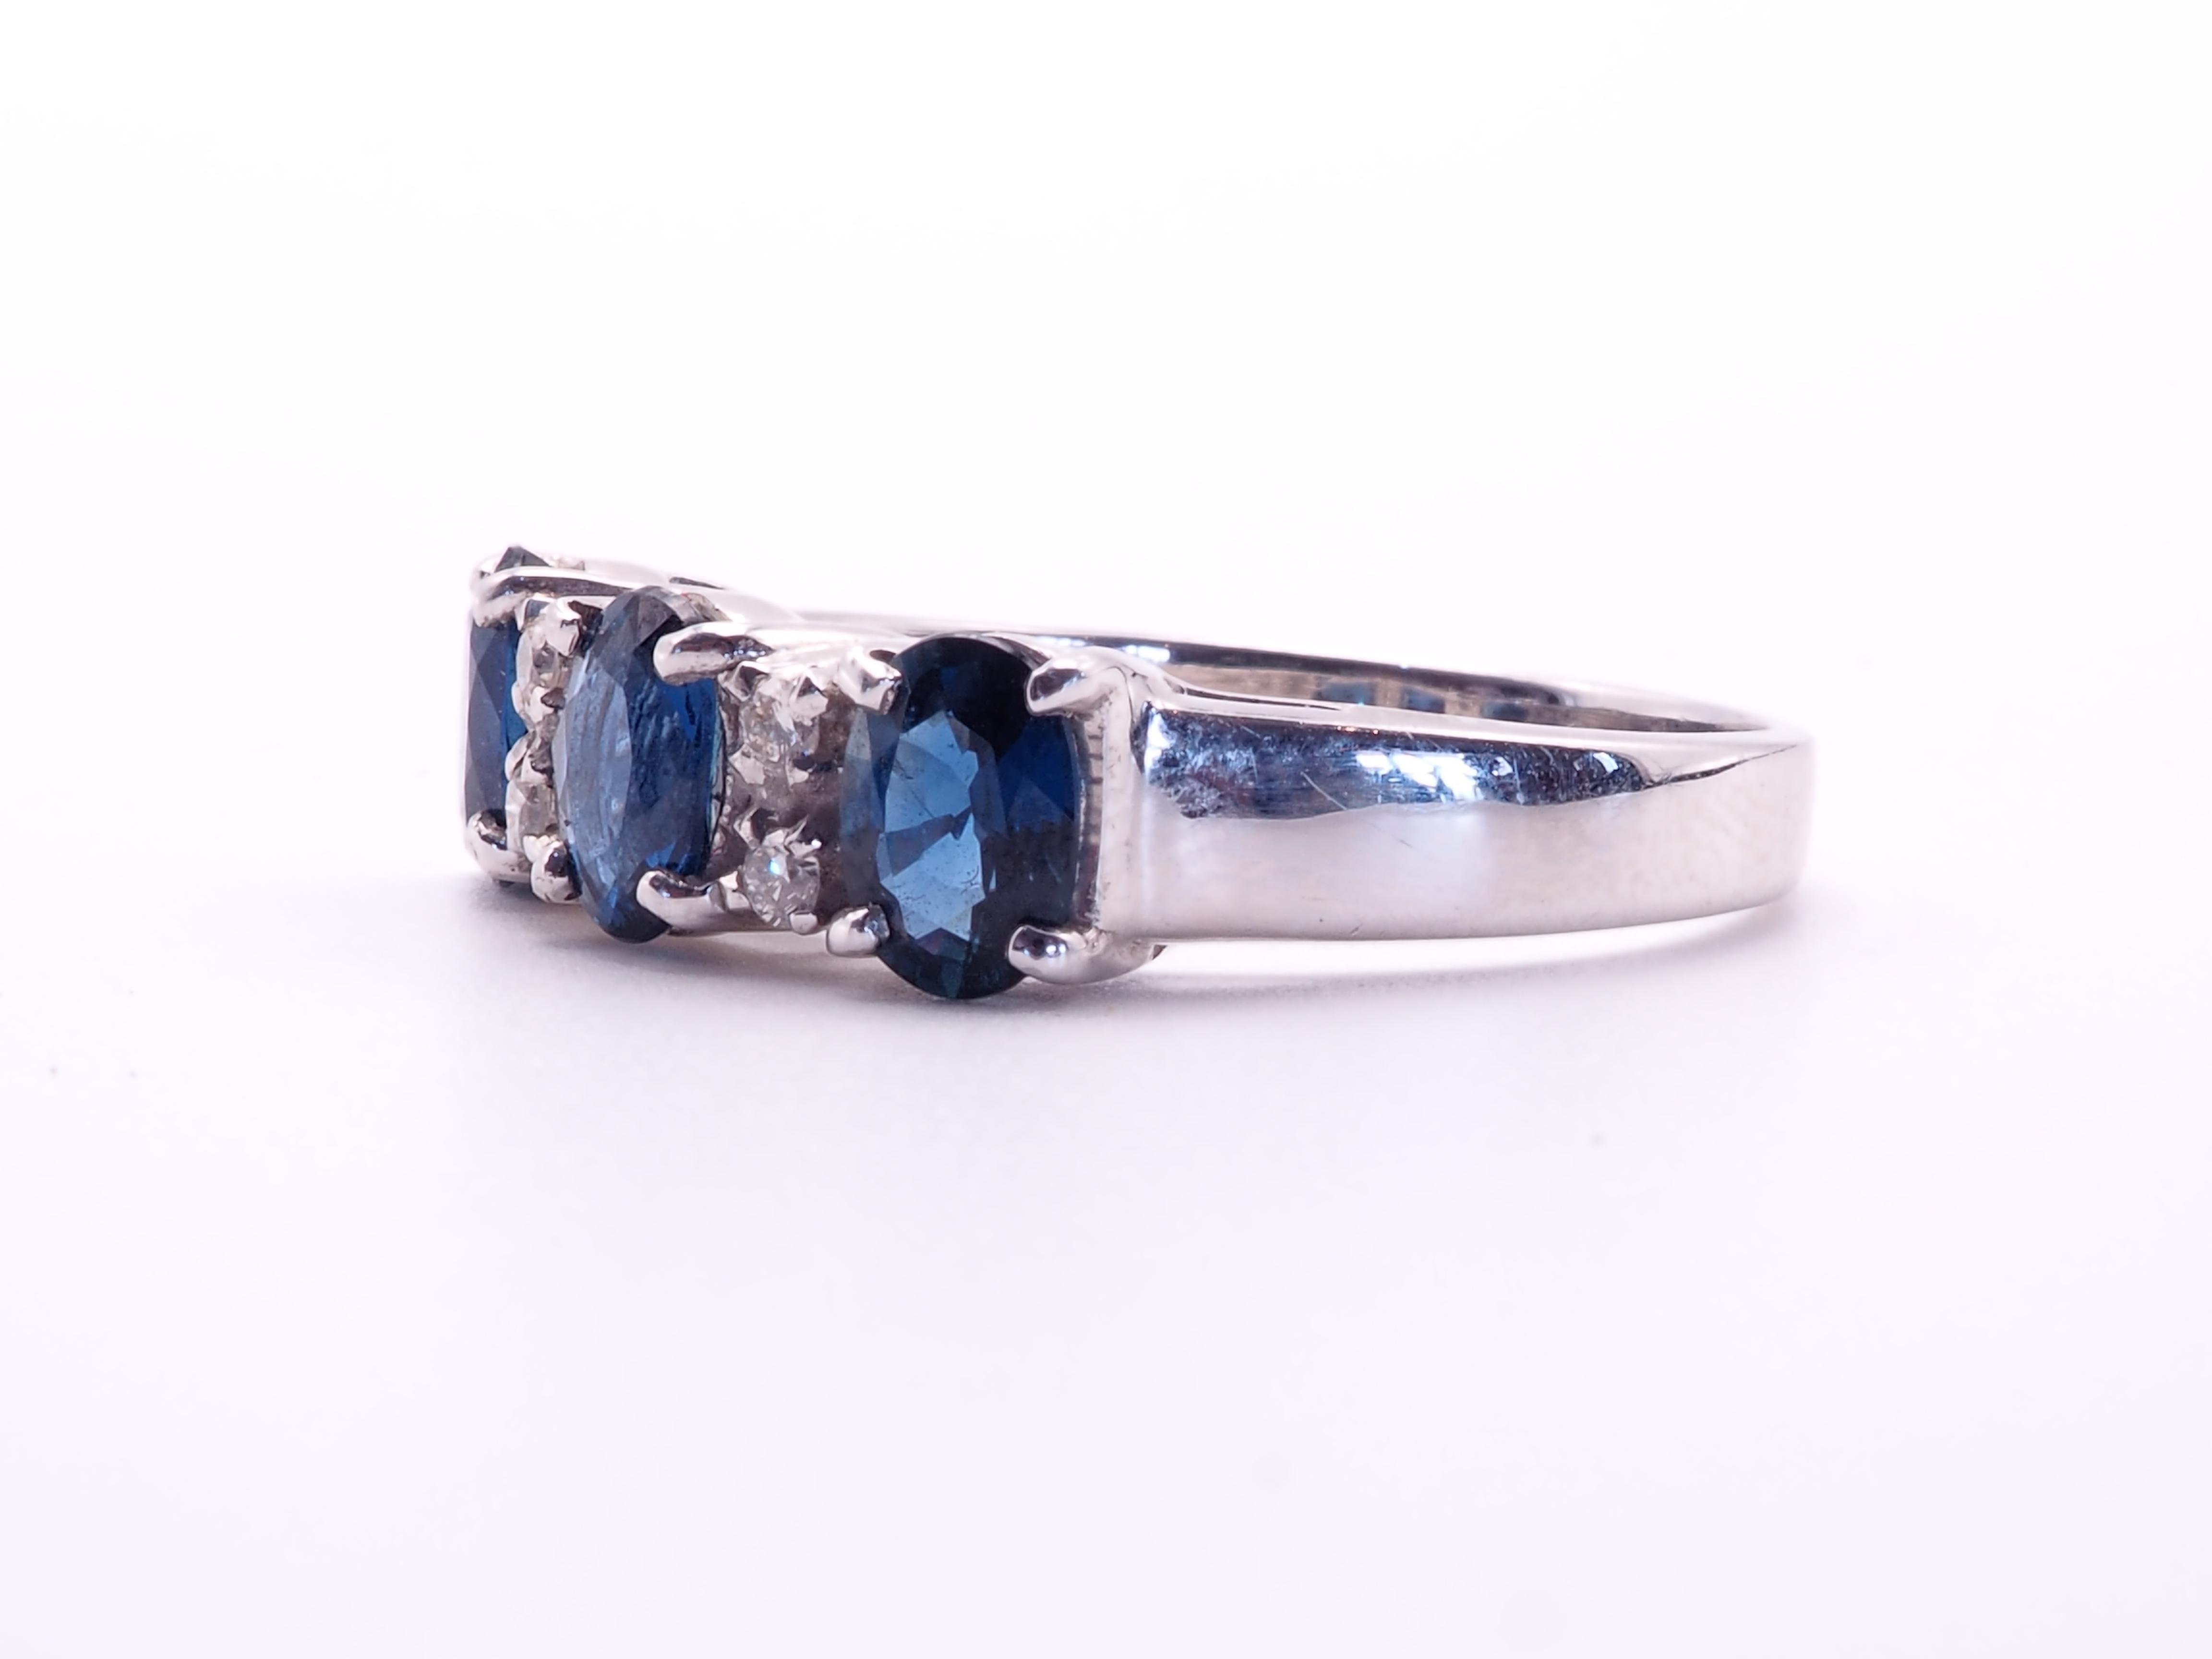 Diese Qualität und schöne Verlobungsstück ist ein 18K Weißgold feine Qualität ovalen blauen Saphir und Diamant-Ring. 3 feurige ovale blaue Saphire sind sorgfältig gesetzt und alle die gleiche Größe mit passenden Farben. Es gibt 4 Diamanten im